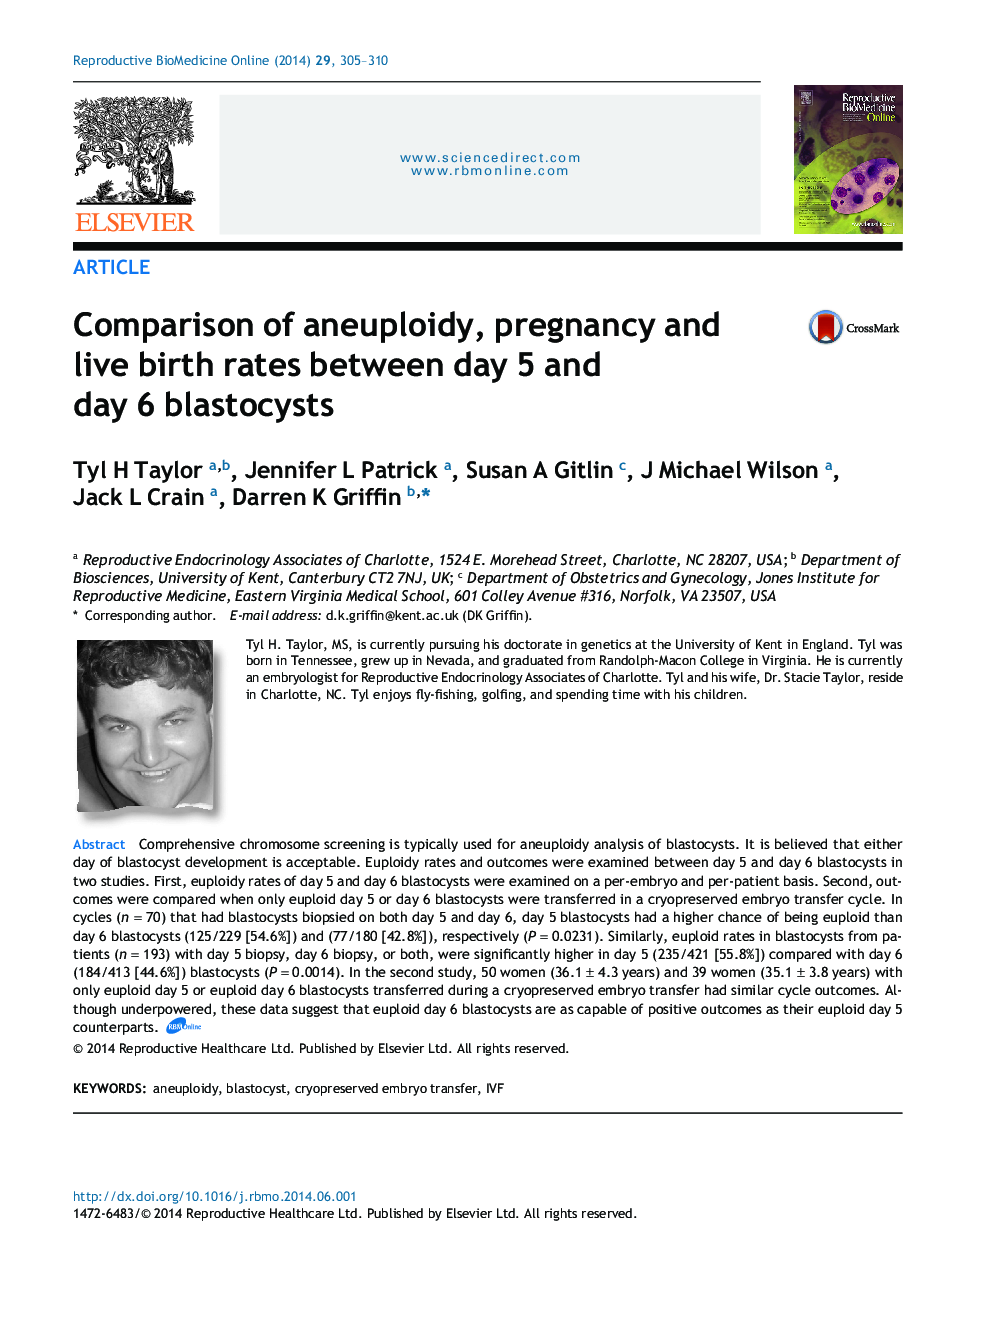 مقایسه آناپلوئیدی، بارداری و تولد زنده در روزهای 5 و 6 بلاستوسیست 